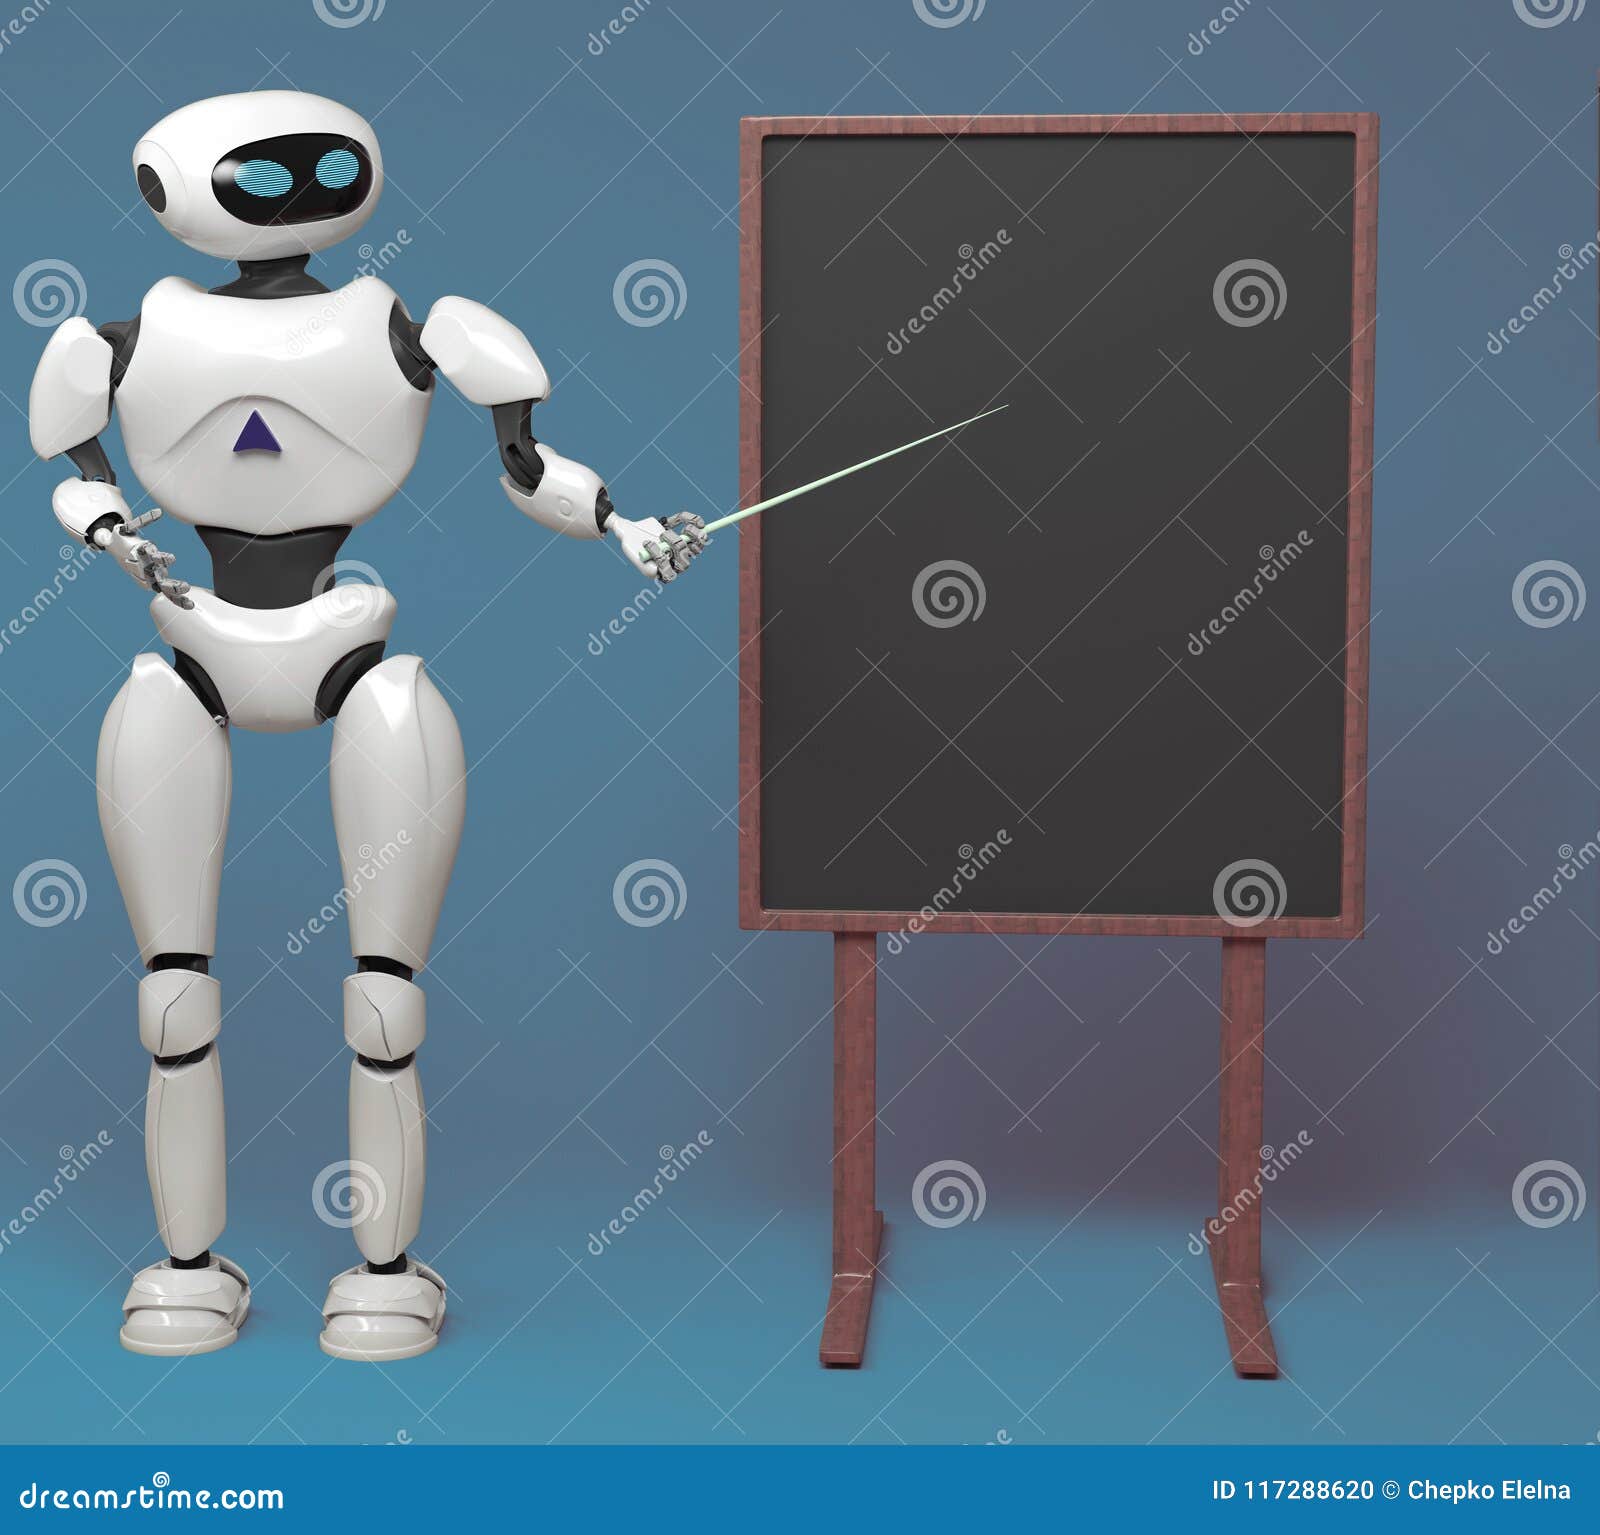 Робот учитель будущего рисунок